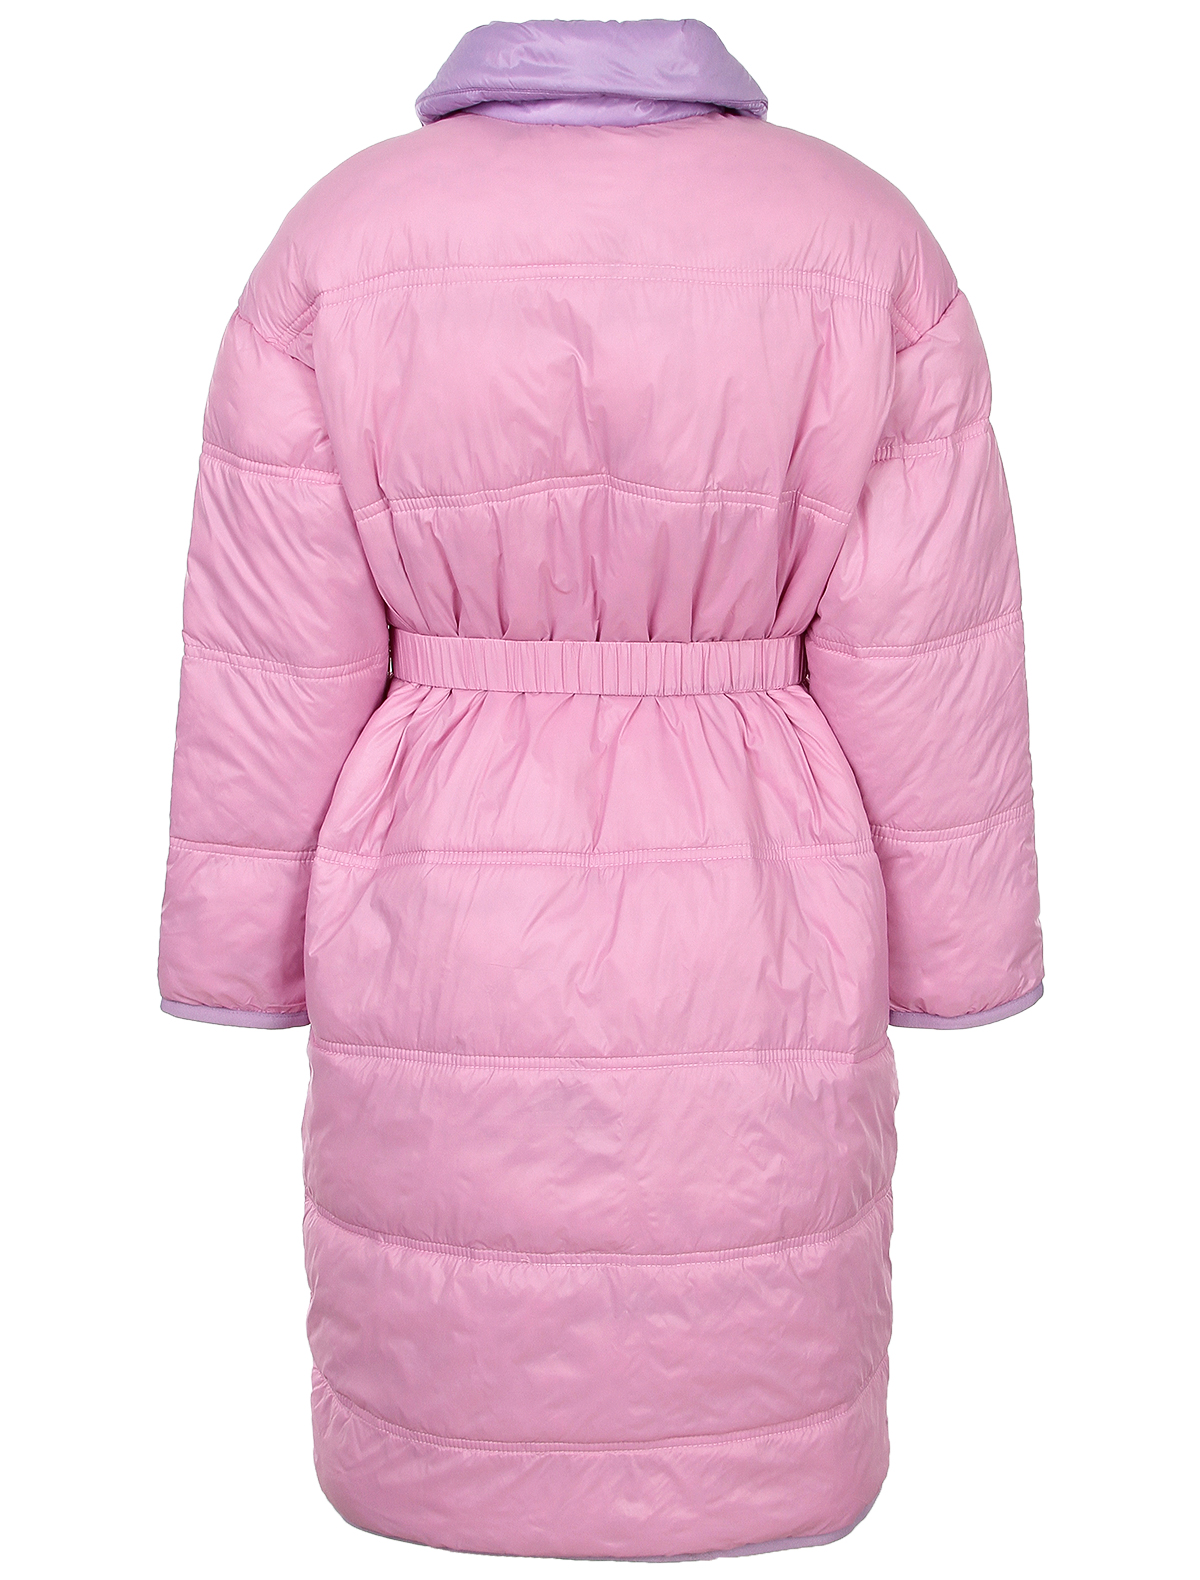 Пальто №21 kids 2480511, цвет розовый, размер 6 1124509281704 - фото 3